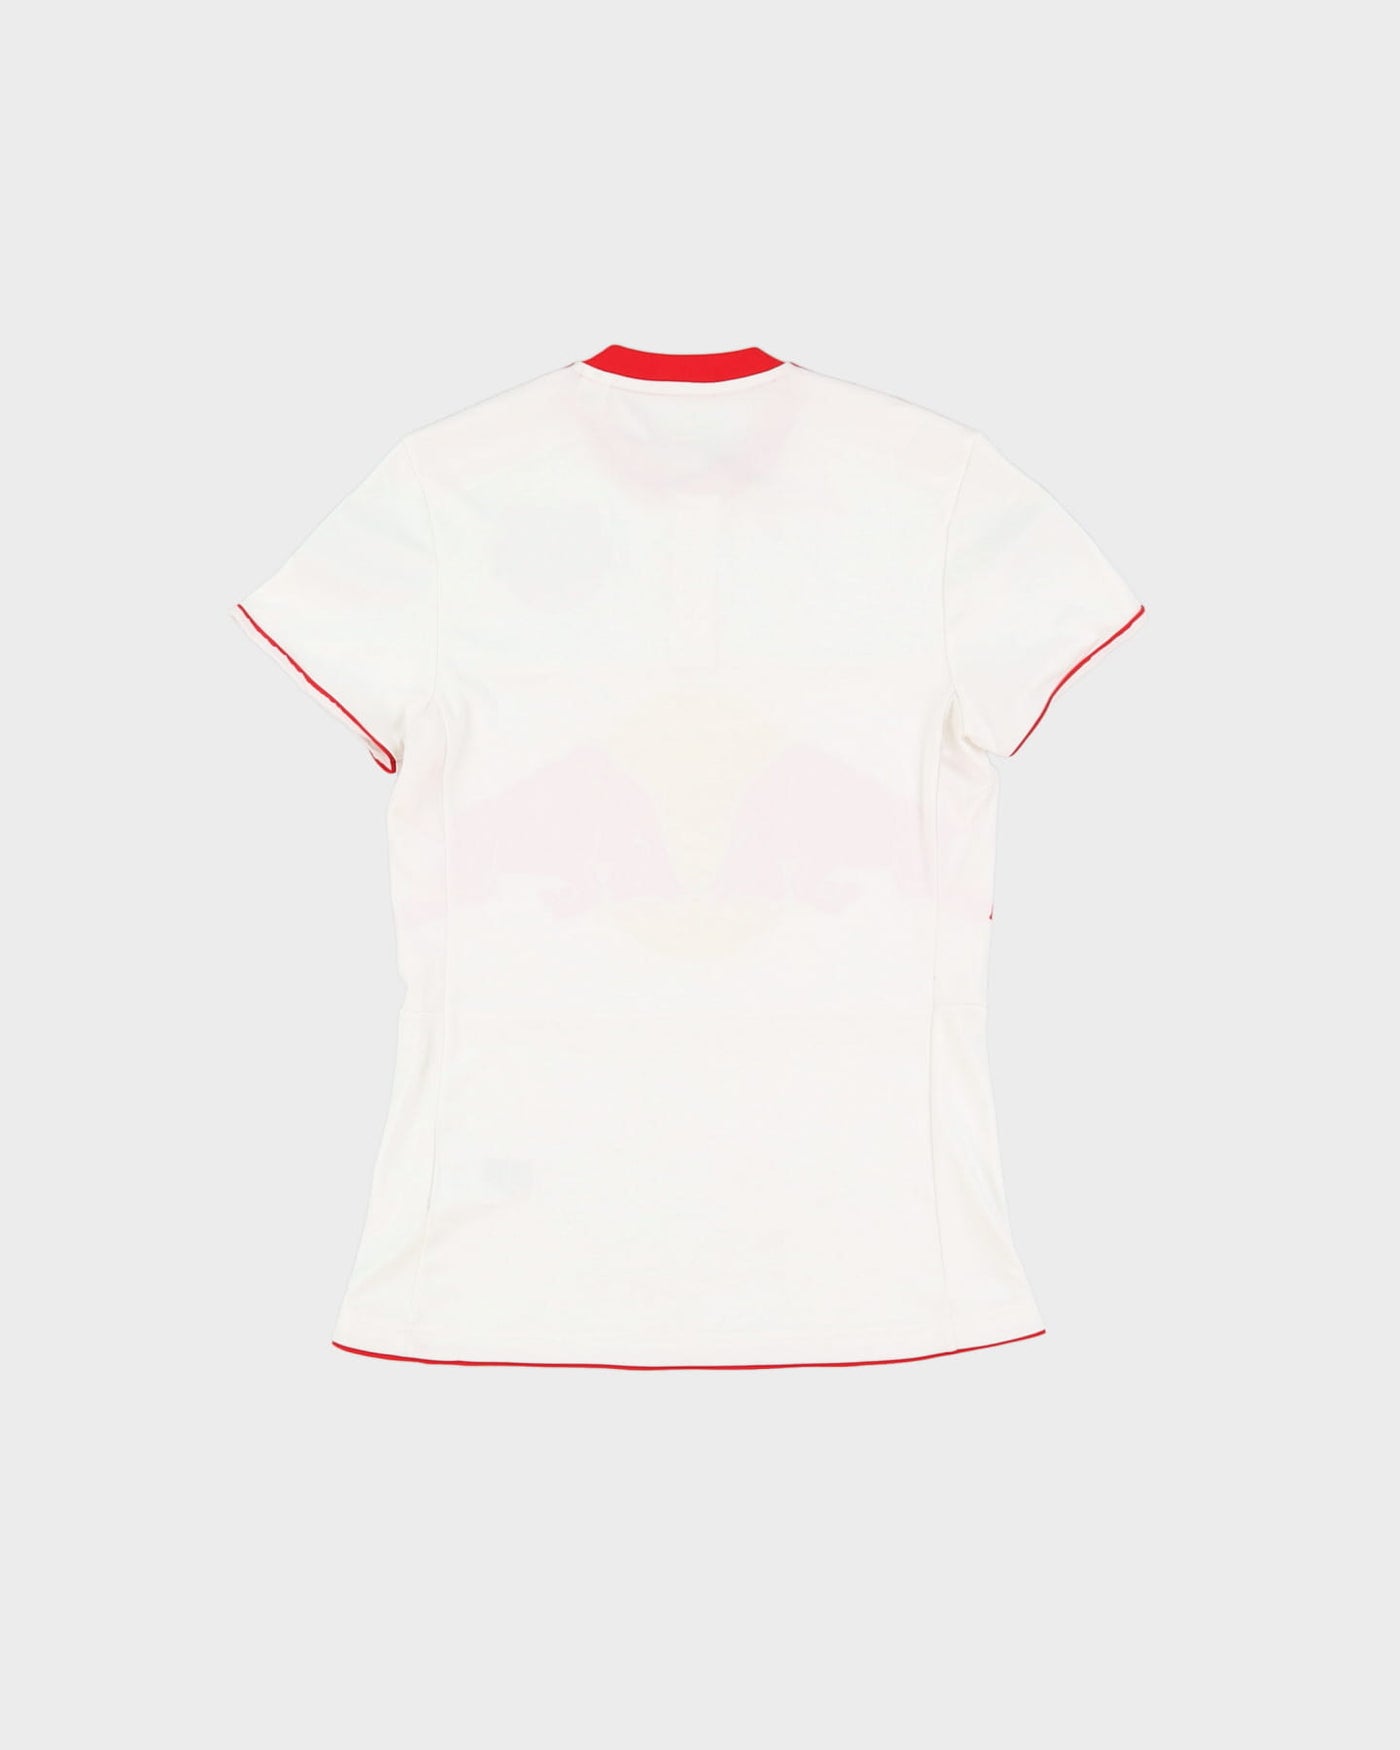 Adidas New York Red Bull's MLS White Football Shirt / Jersey - S